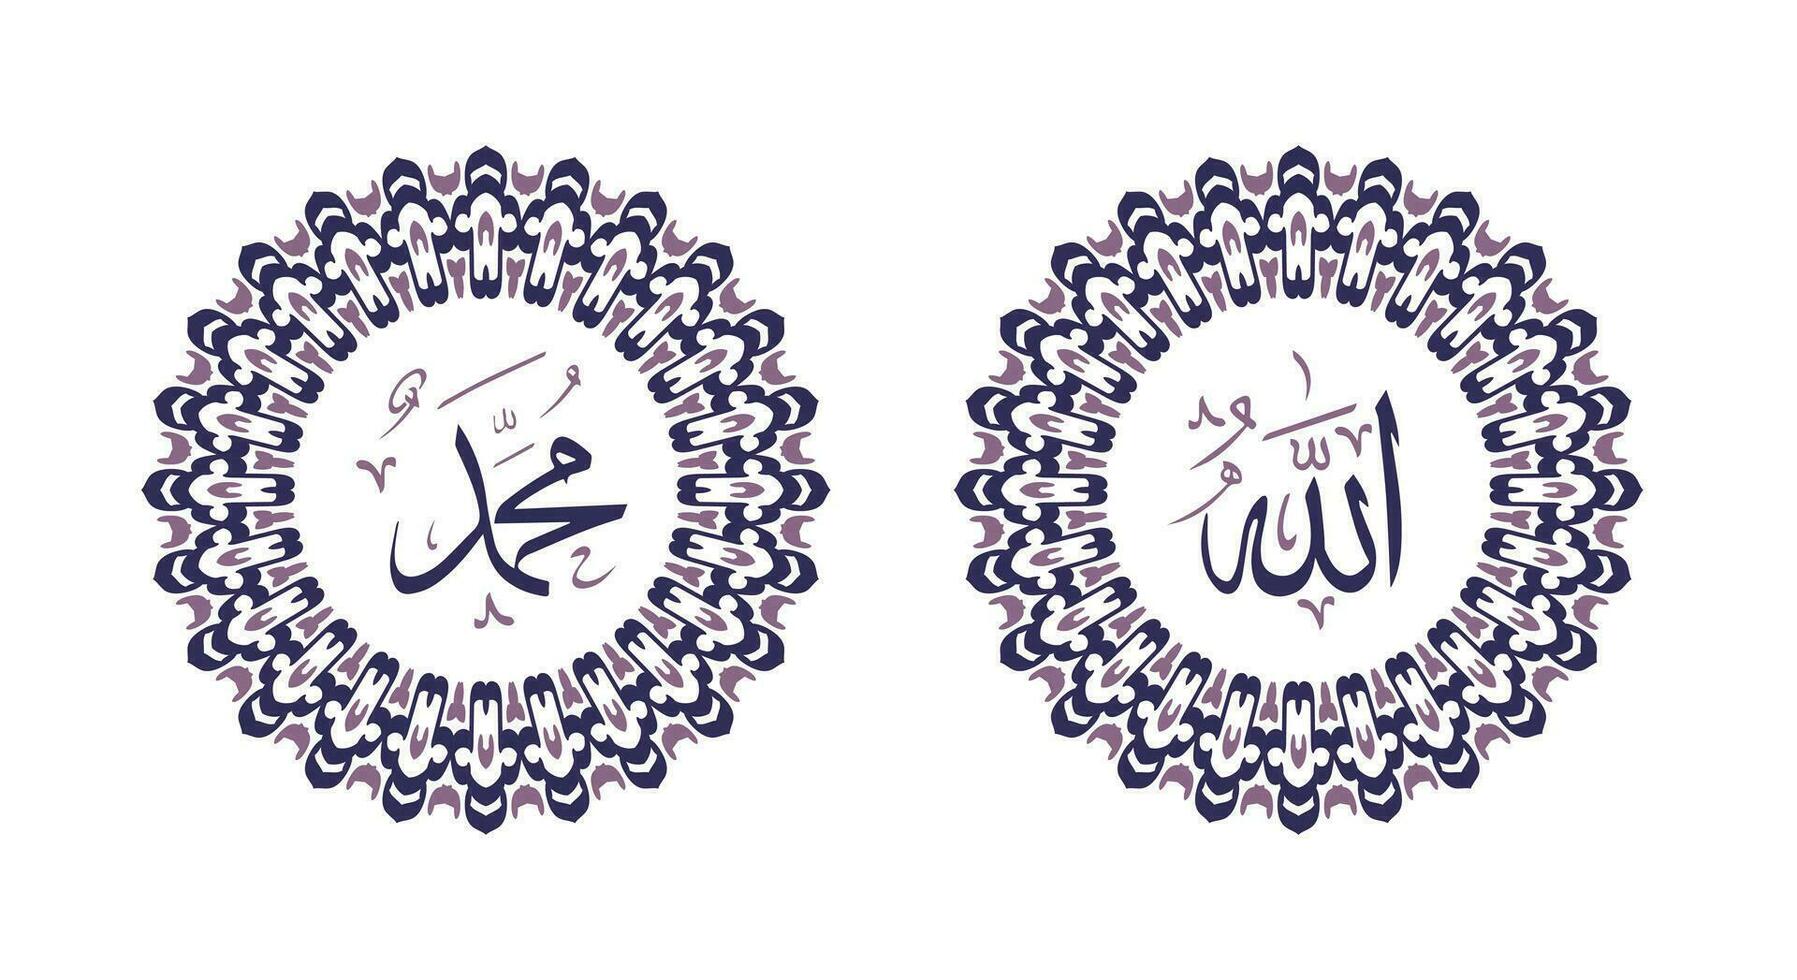 Allah Muhammad Name von Allah Mohammed, Allah Muhammad Arabisch islamisch Kalligraphie Kunst, mit traditionell Rahmen und lila Farbe vektor